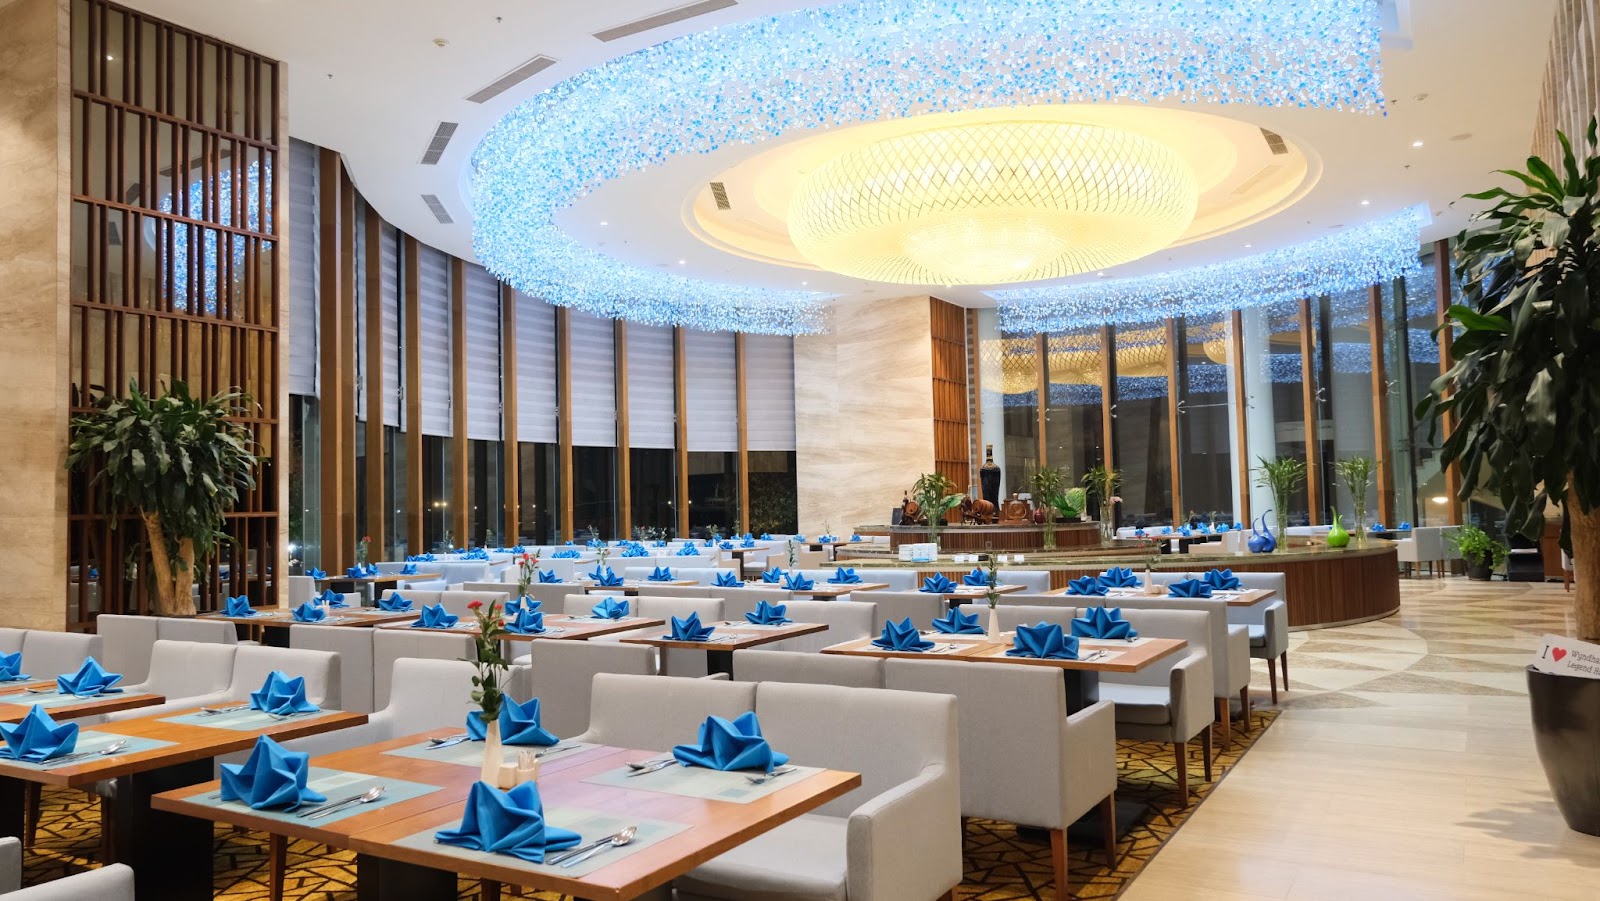 Du lịch Hạ Long cuối năm tại khách sạn 5 sao Wyndham Legend Ha Long - Wyndham Legend Ha Long - lựa chọn lý tưởng cho kỳ nghỉ cuối năm - Thưởng thức ẩm thực quốc tế